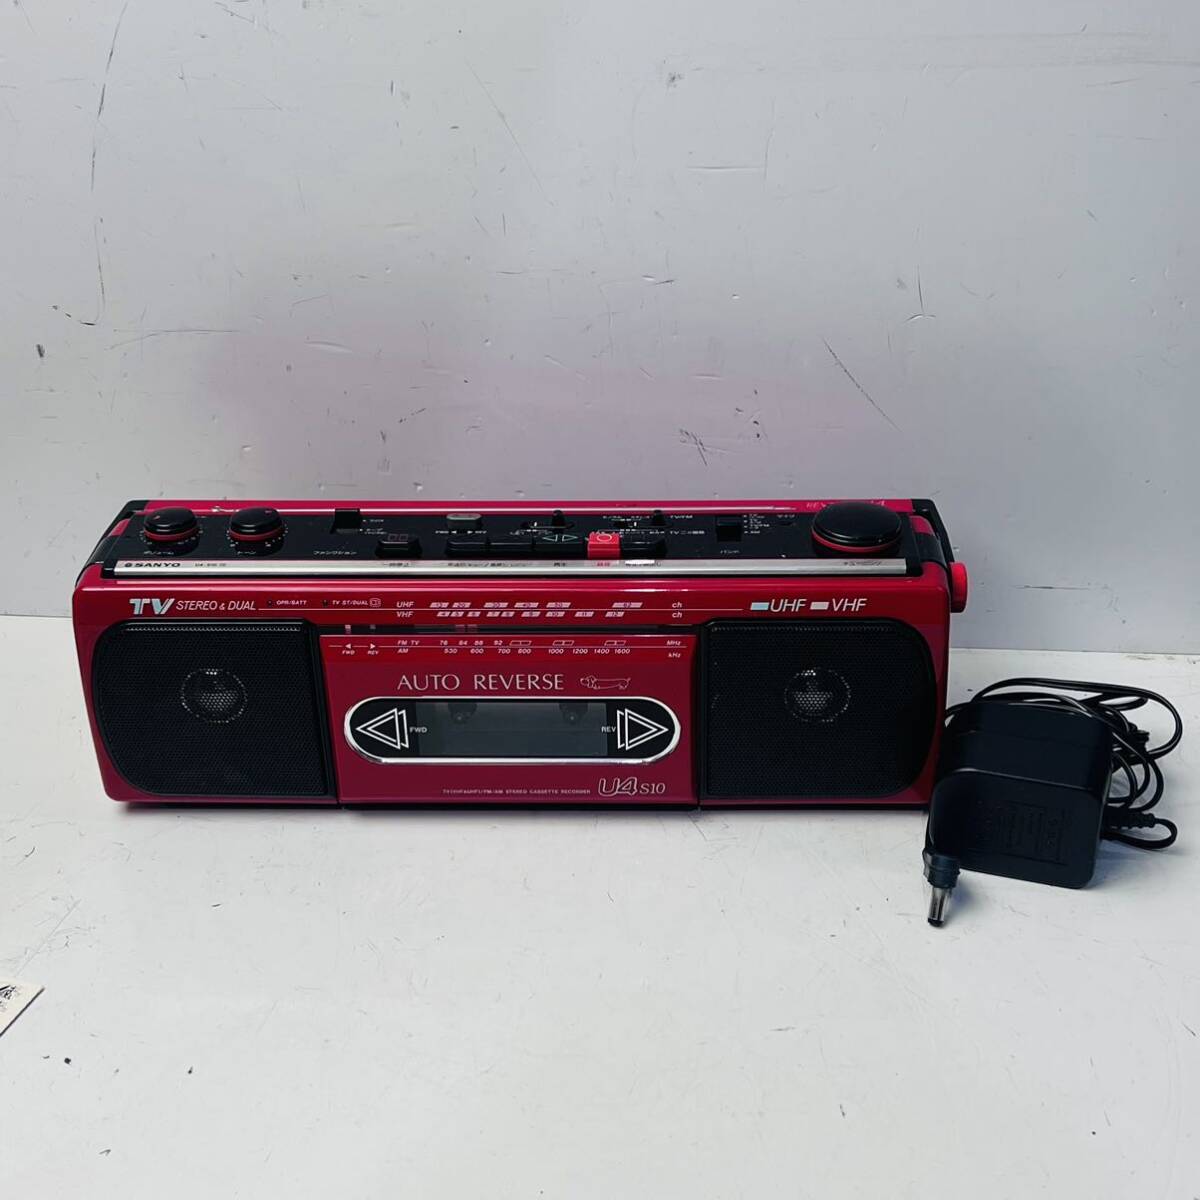 SANYO ラジカセ U4-S10 赤色 レッド サンヨー FM AM ラジオ 昭和レトロ の画像1